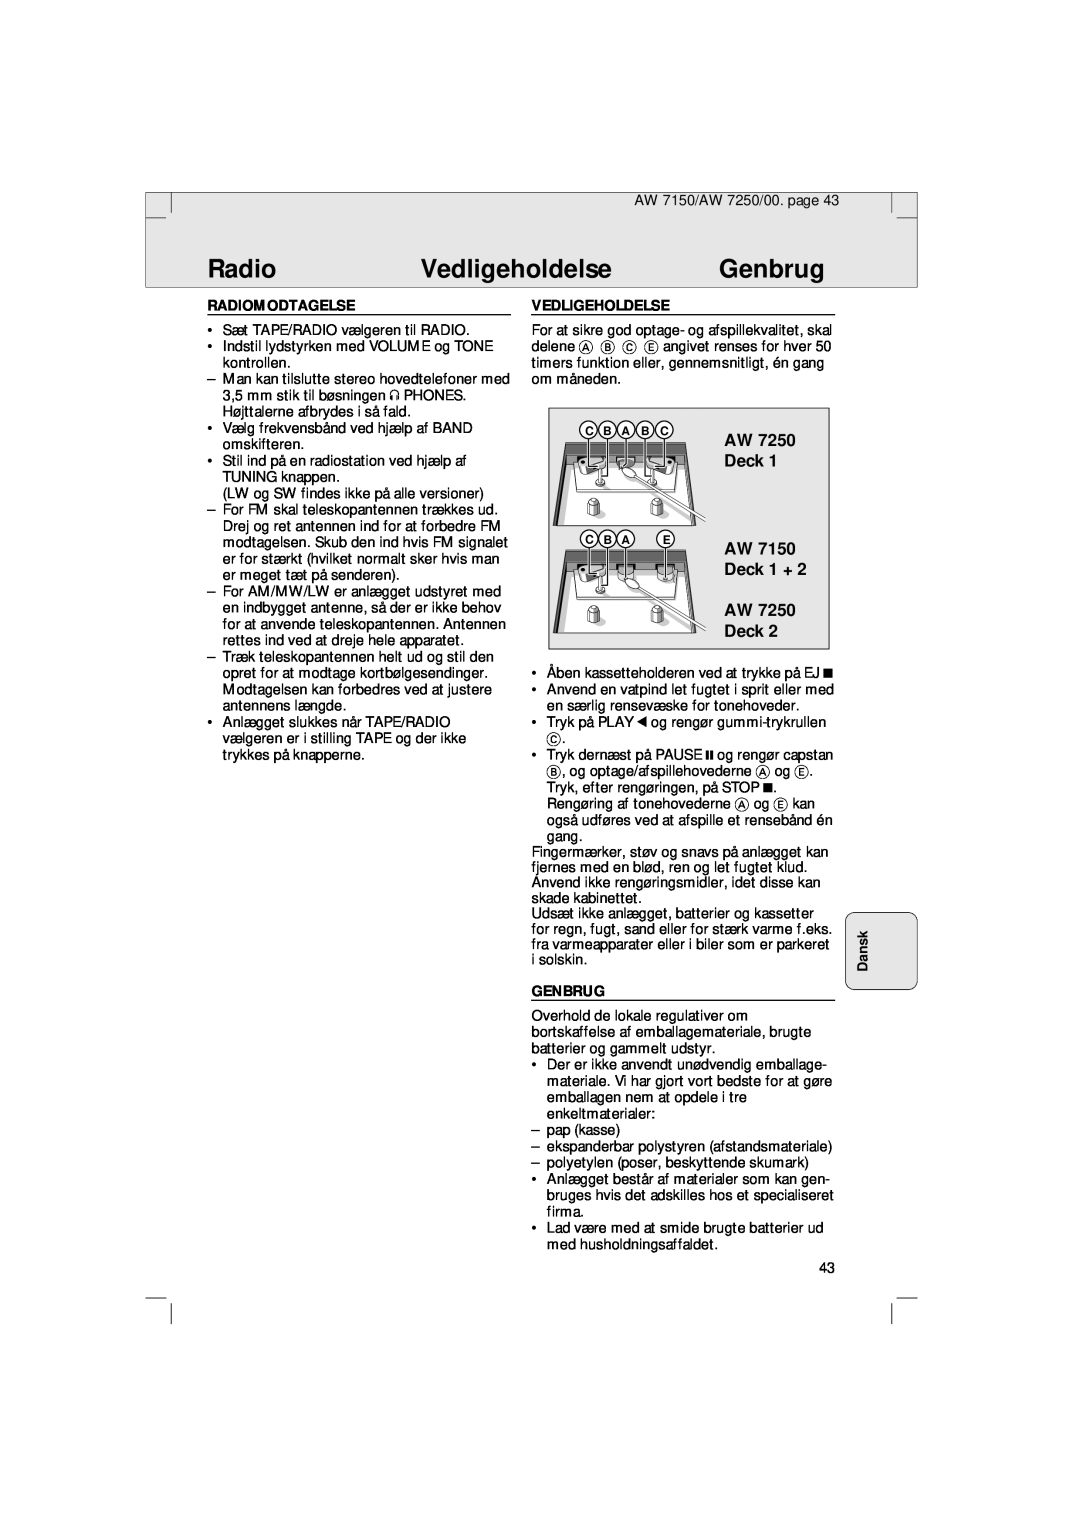 Philips AW 7250/04S, AW 7150/04S manual Vedligeholdelse, Genbrug, Deck 1 + AW Deck, Dansk, Radiomodtagelse 